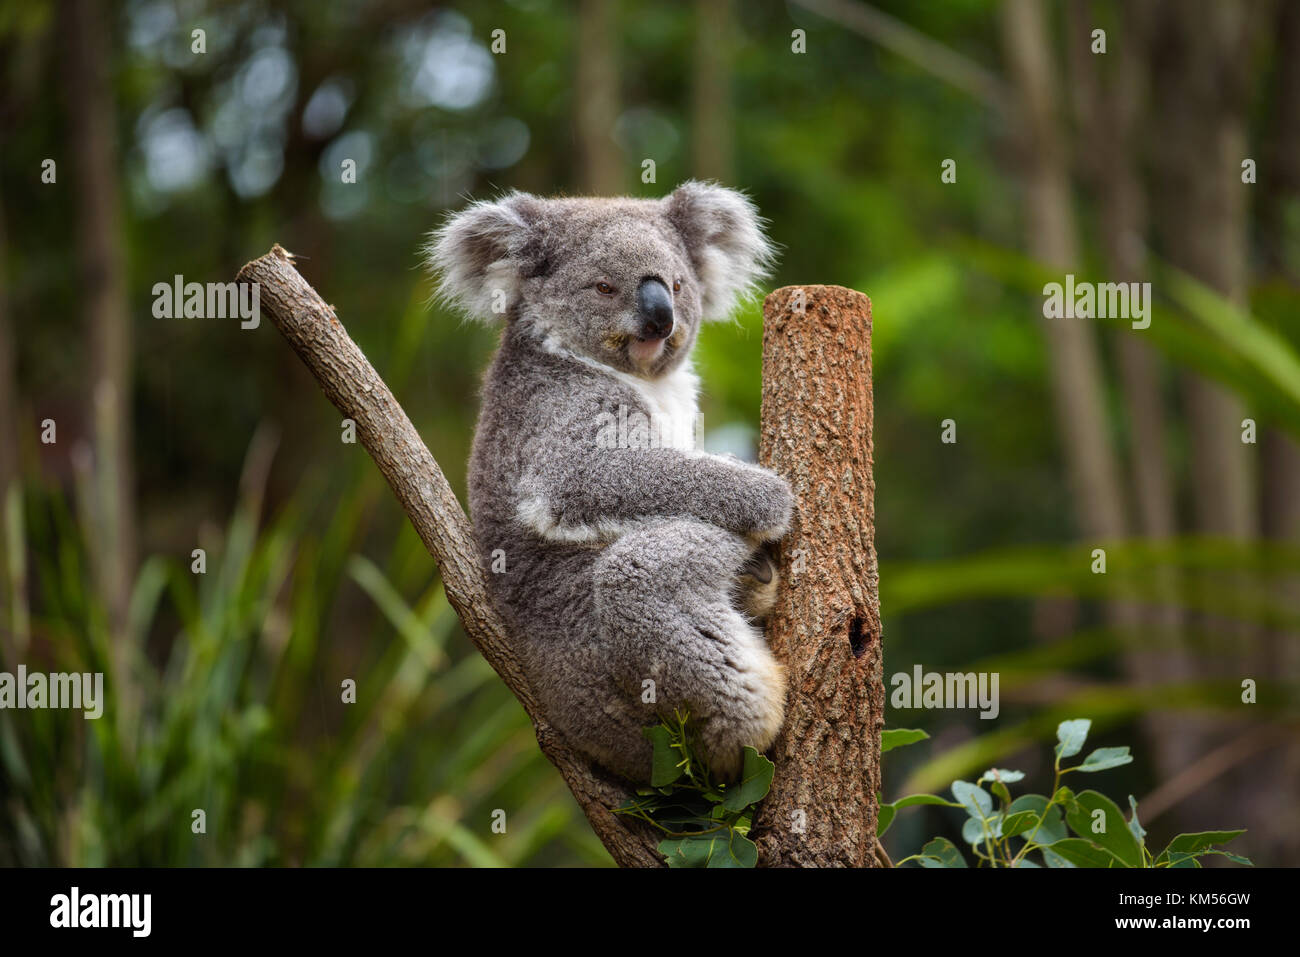 Koala on eucalyptus tree in Australia Stock Photo